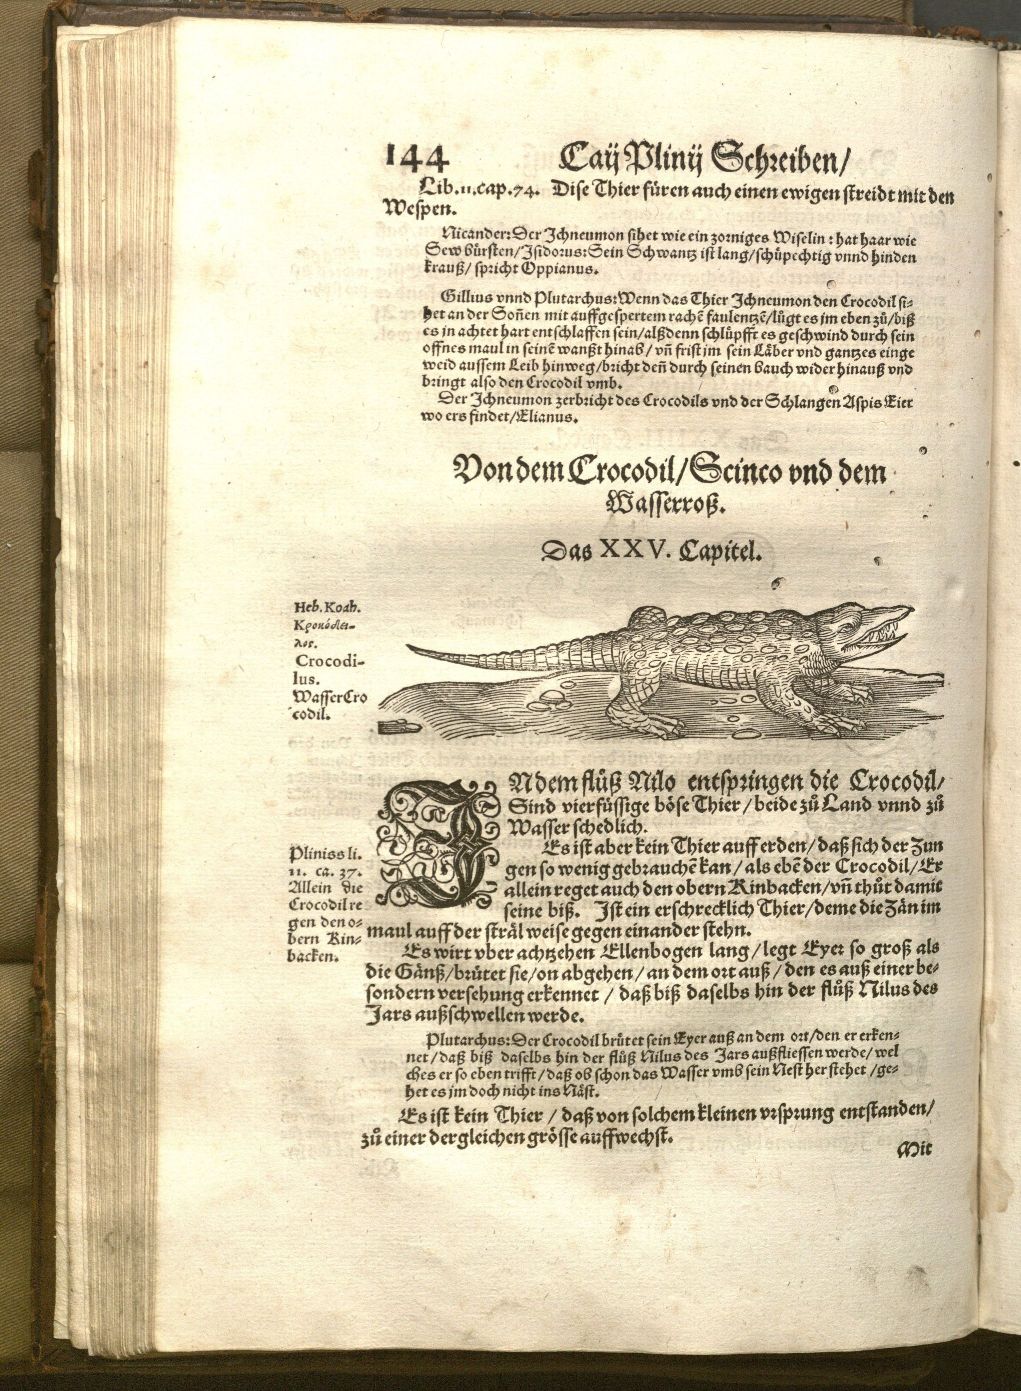 Photograph of page 144 from Bücher und Schrifften von der Natur, featuring a section on crocodiles